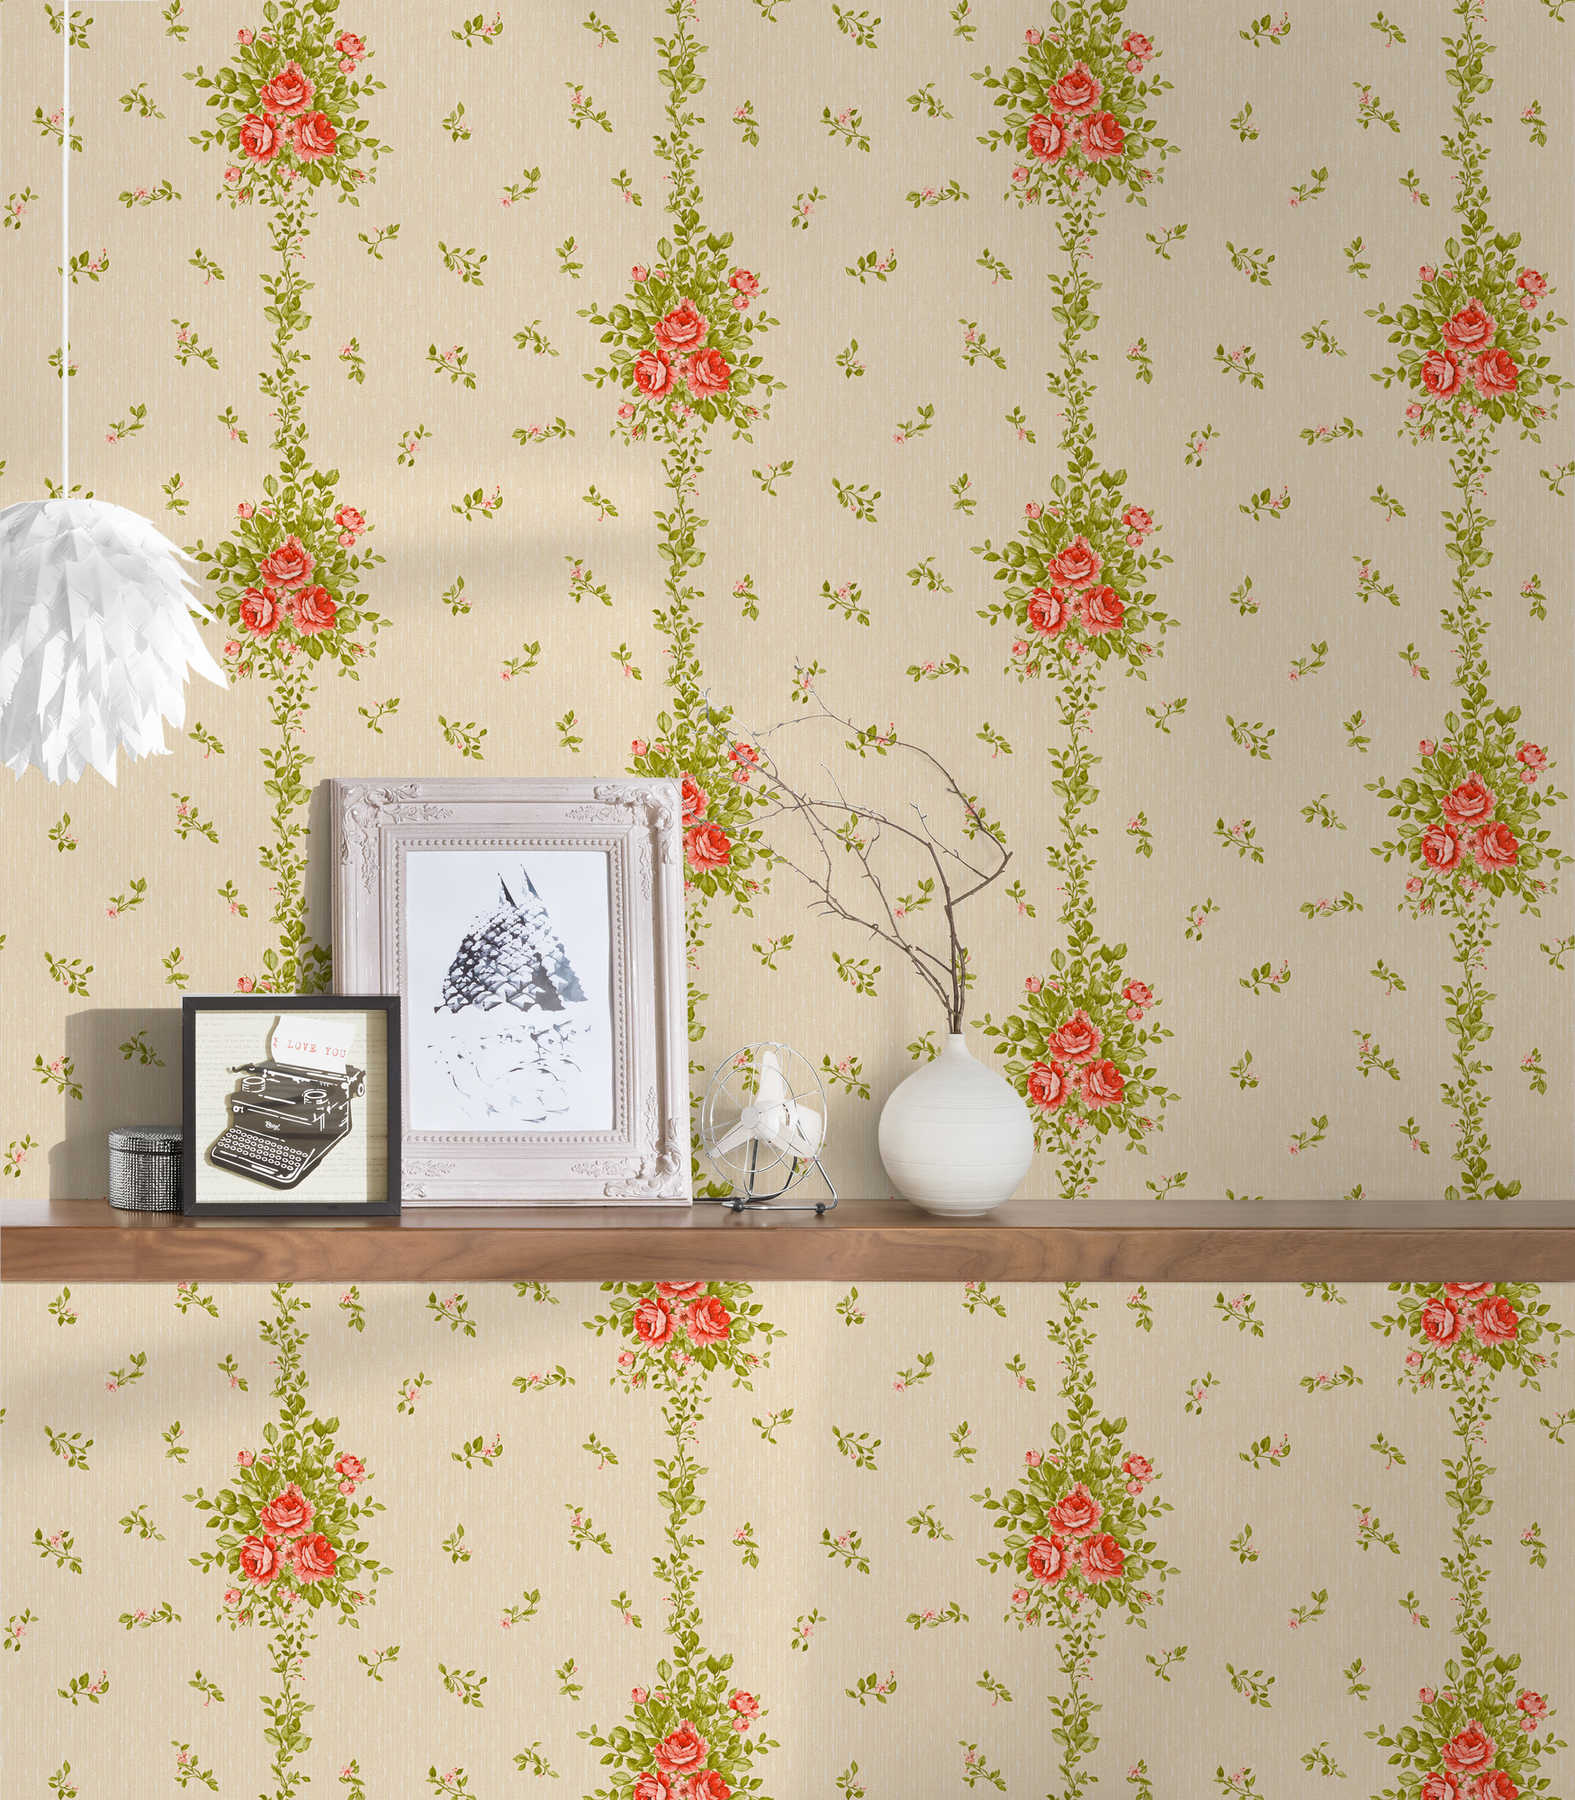             Floral wallpaper roses pattern & stripes effect - beige
        